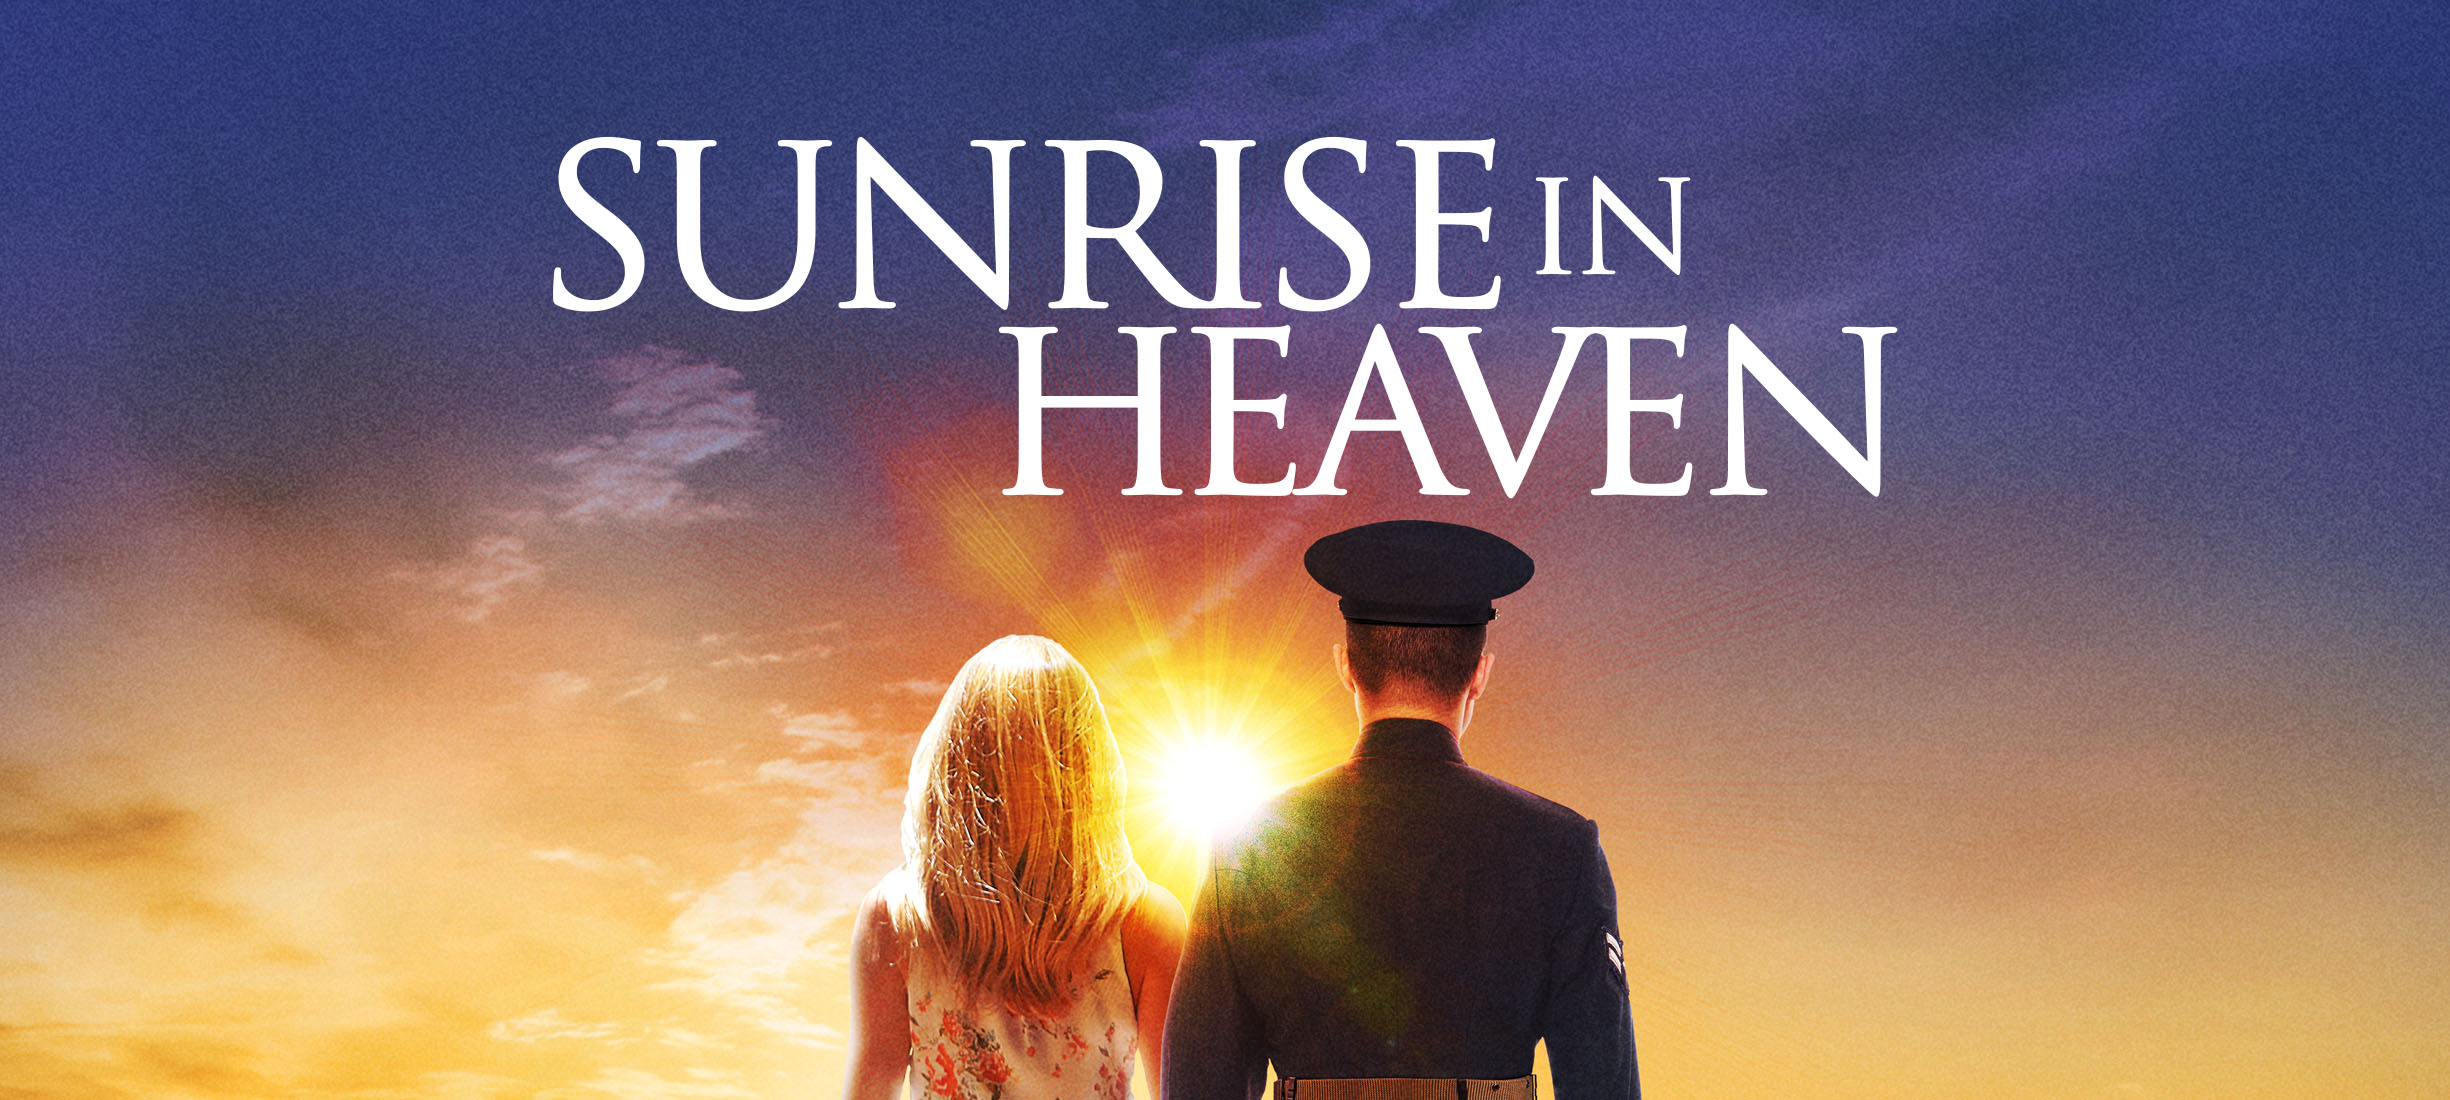 SUNRISE IN HEAVEN Official Trailer (2019) Caylee Cowan, Dee Wallace Movie  HD 